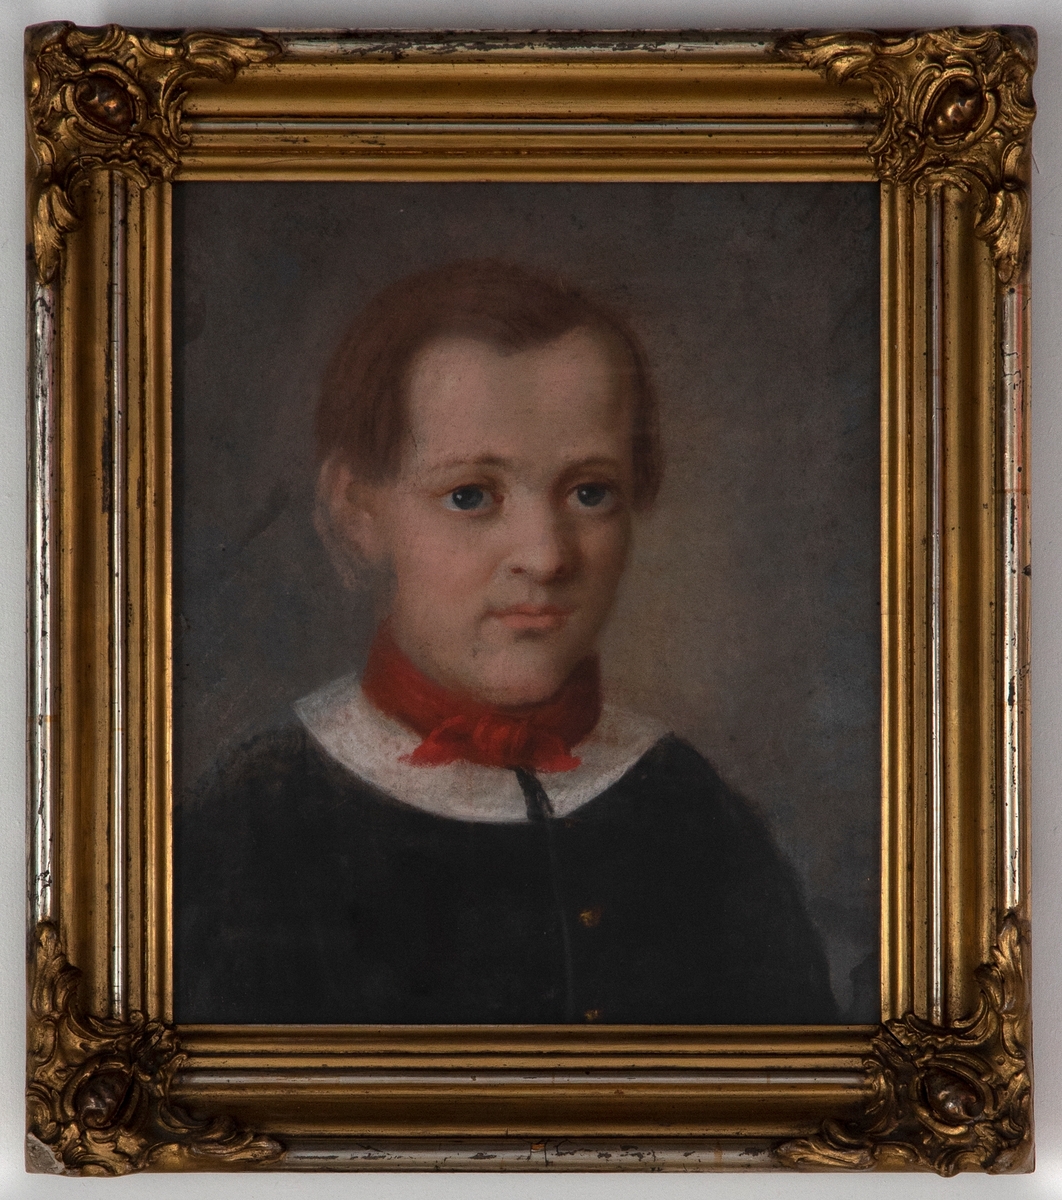 Portrett av en gutt med mellomblondt hår og blå øyne på grålig bunn. Gutten er iført en enkeltspennet mørk jakke med rund hvit krage og et rødt tørkle rundt halsen.